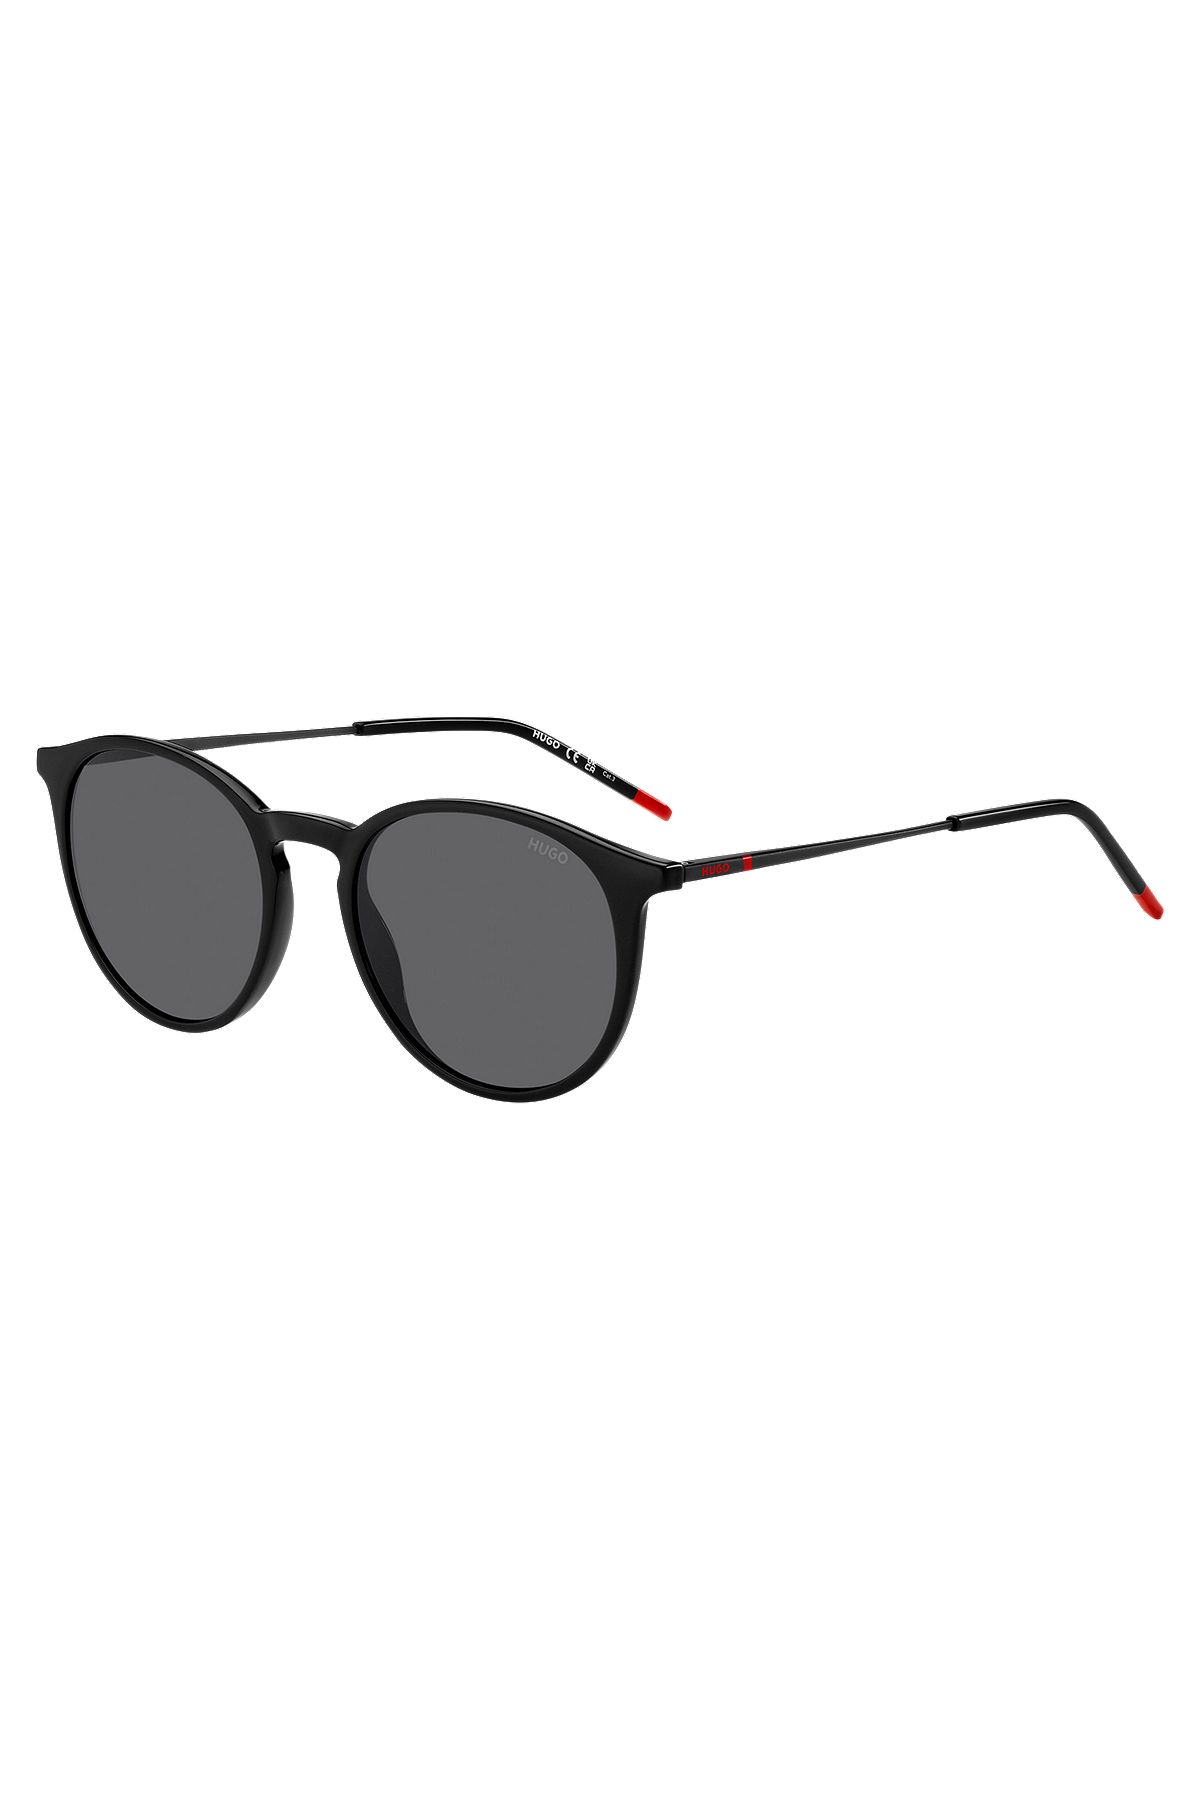 Schwarze Sonnenbrille mit charakteristischen Bügelenden, Schwarz